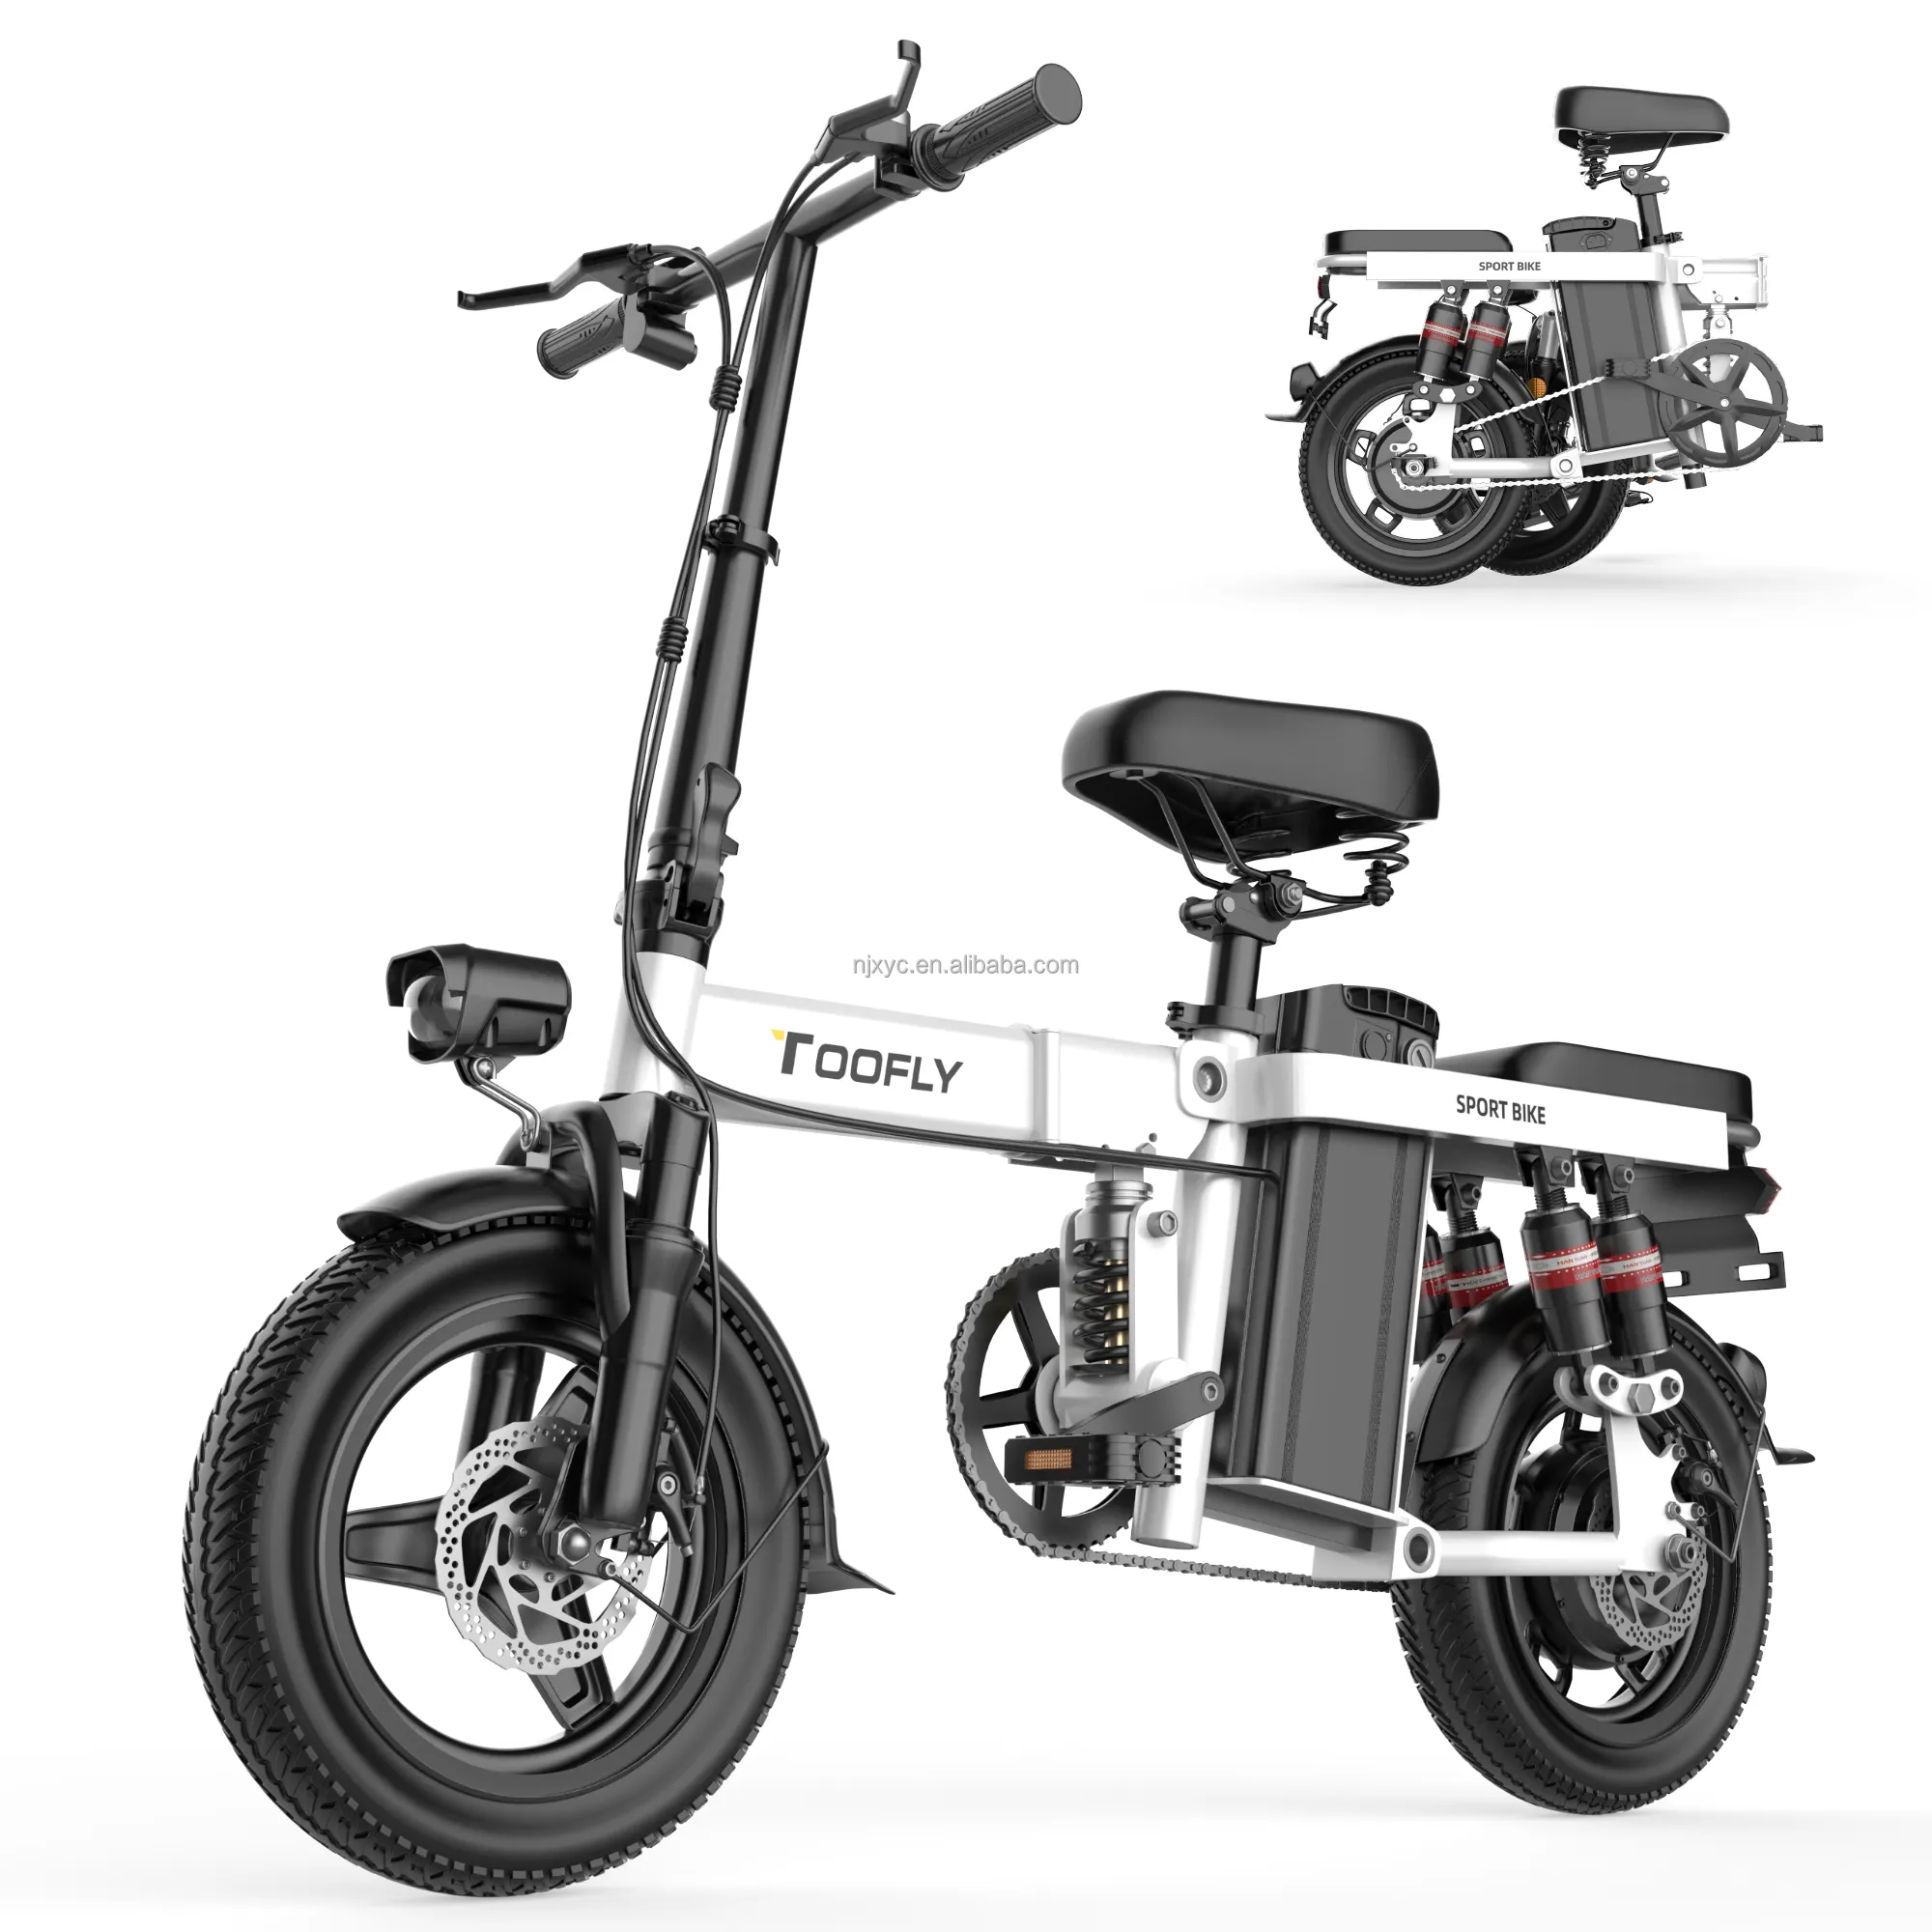 Bicicleta eléctrica 48V scooter eléctrico de dos ruedas bicicleta eléctrica equipada con precios competitivos